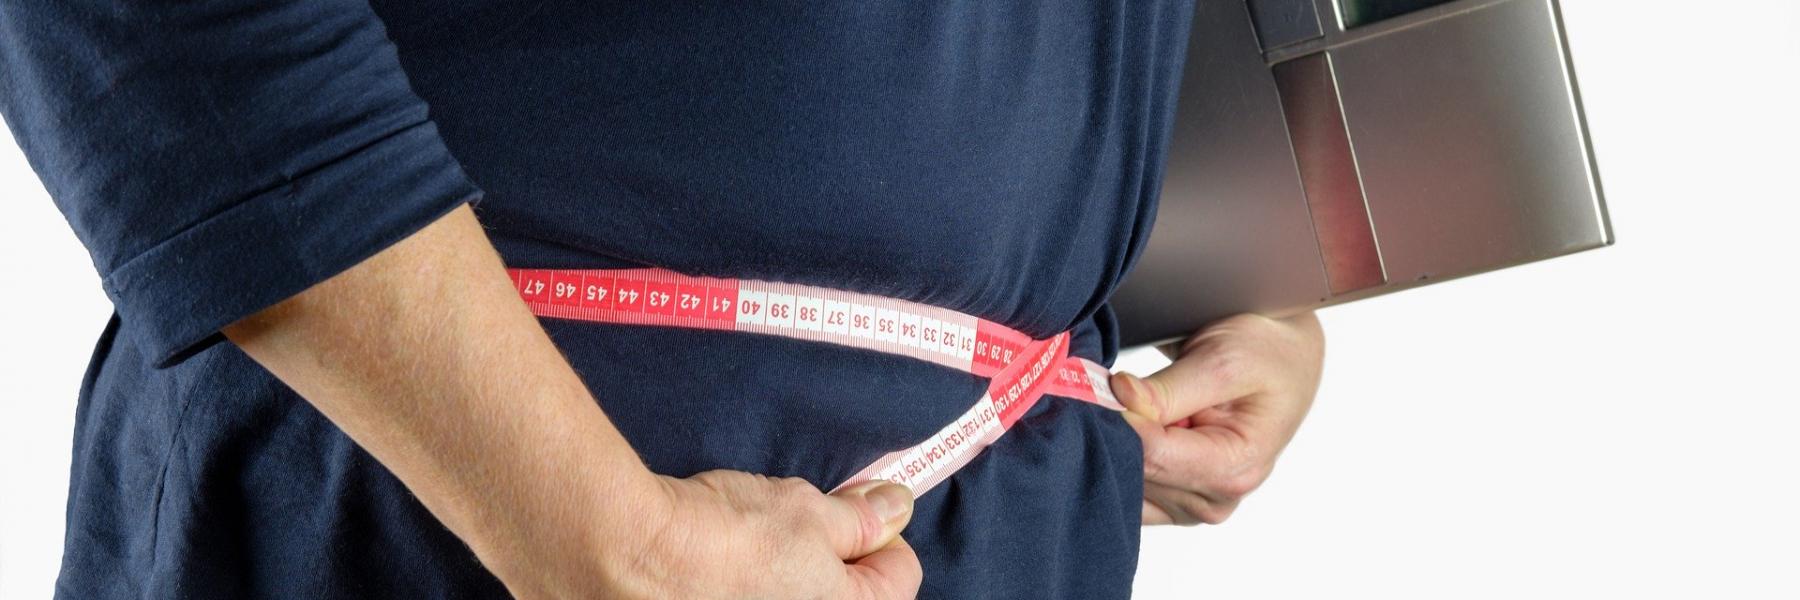 إليكِ خطوات بسيطة لتجنب زيادة الوزن أثناء العمل من المنزل